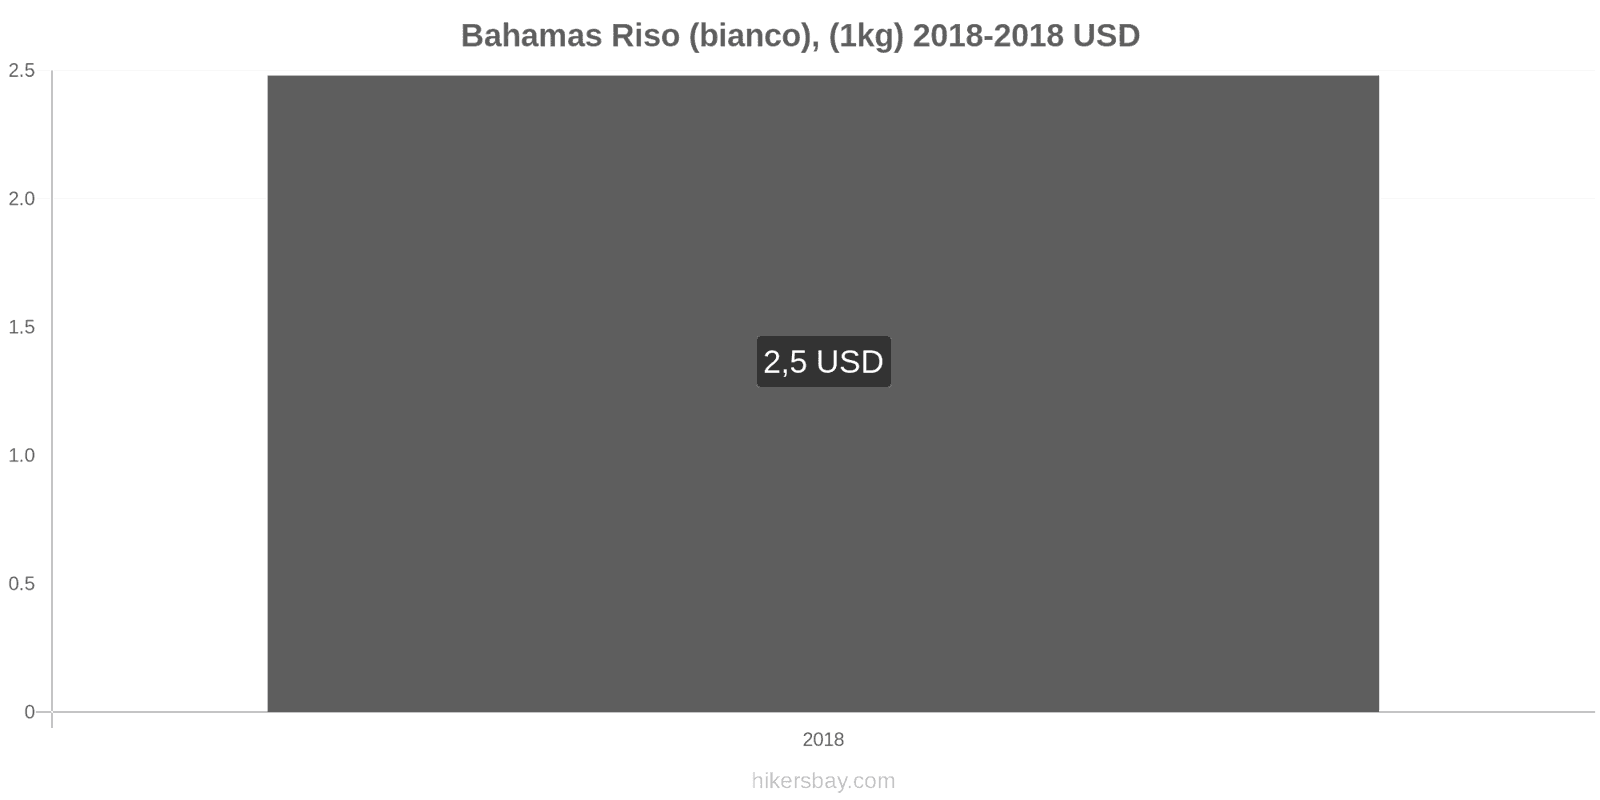 Bahamas cambi di prezzo Chilo di riso bianco hikersbay.com